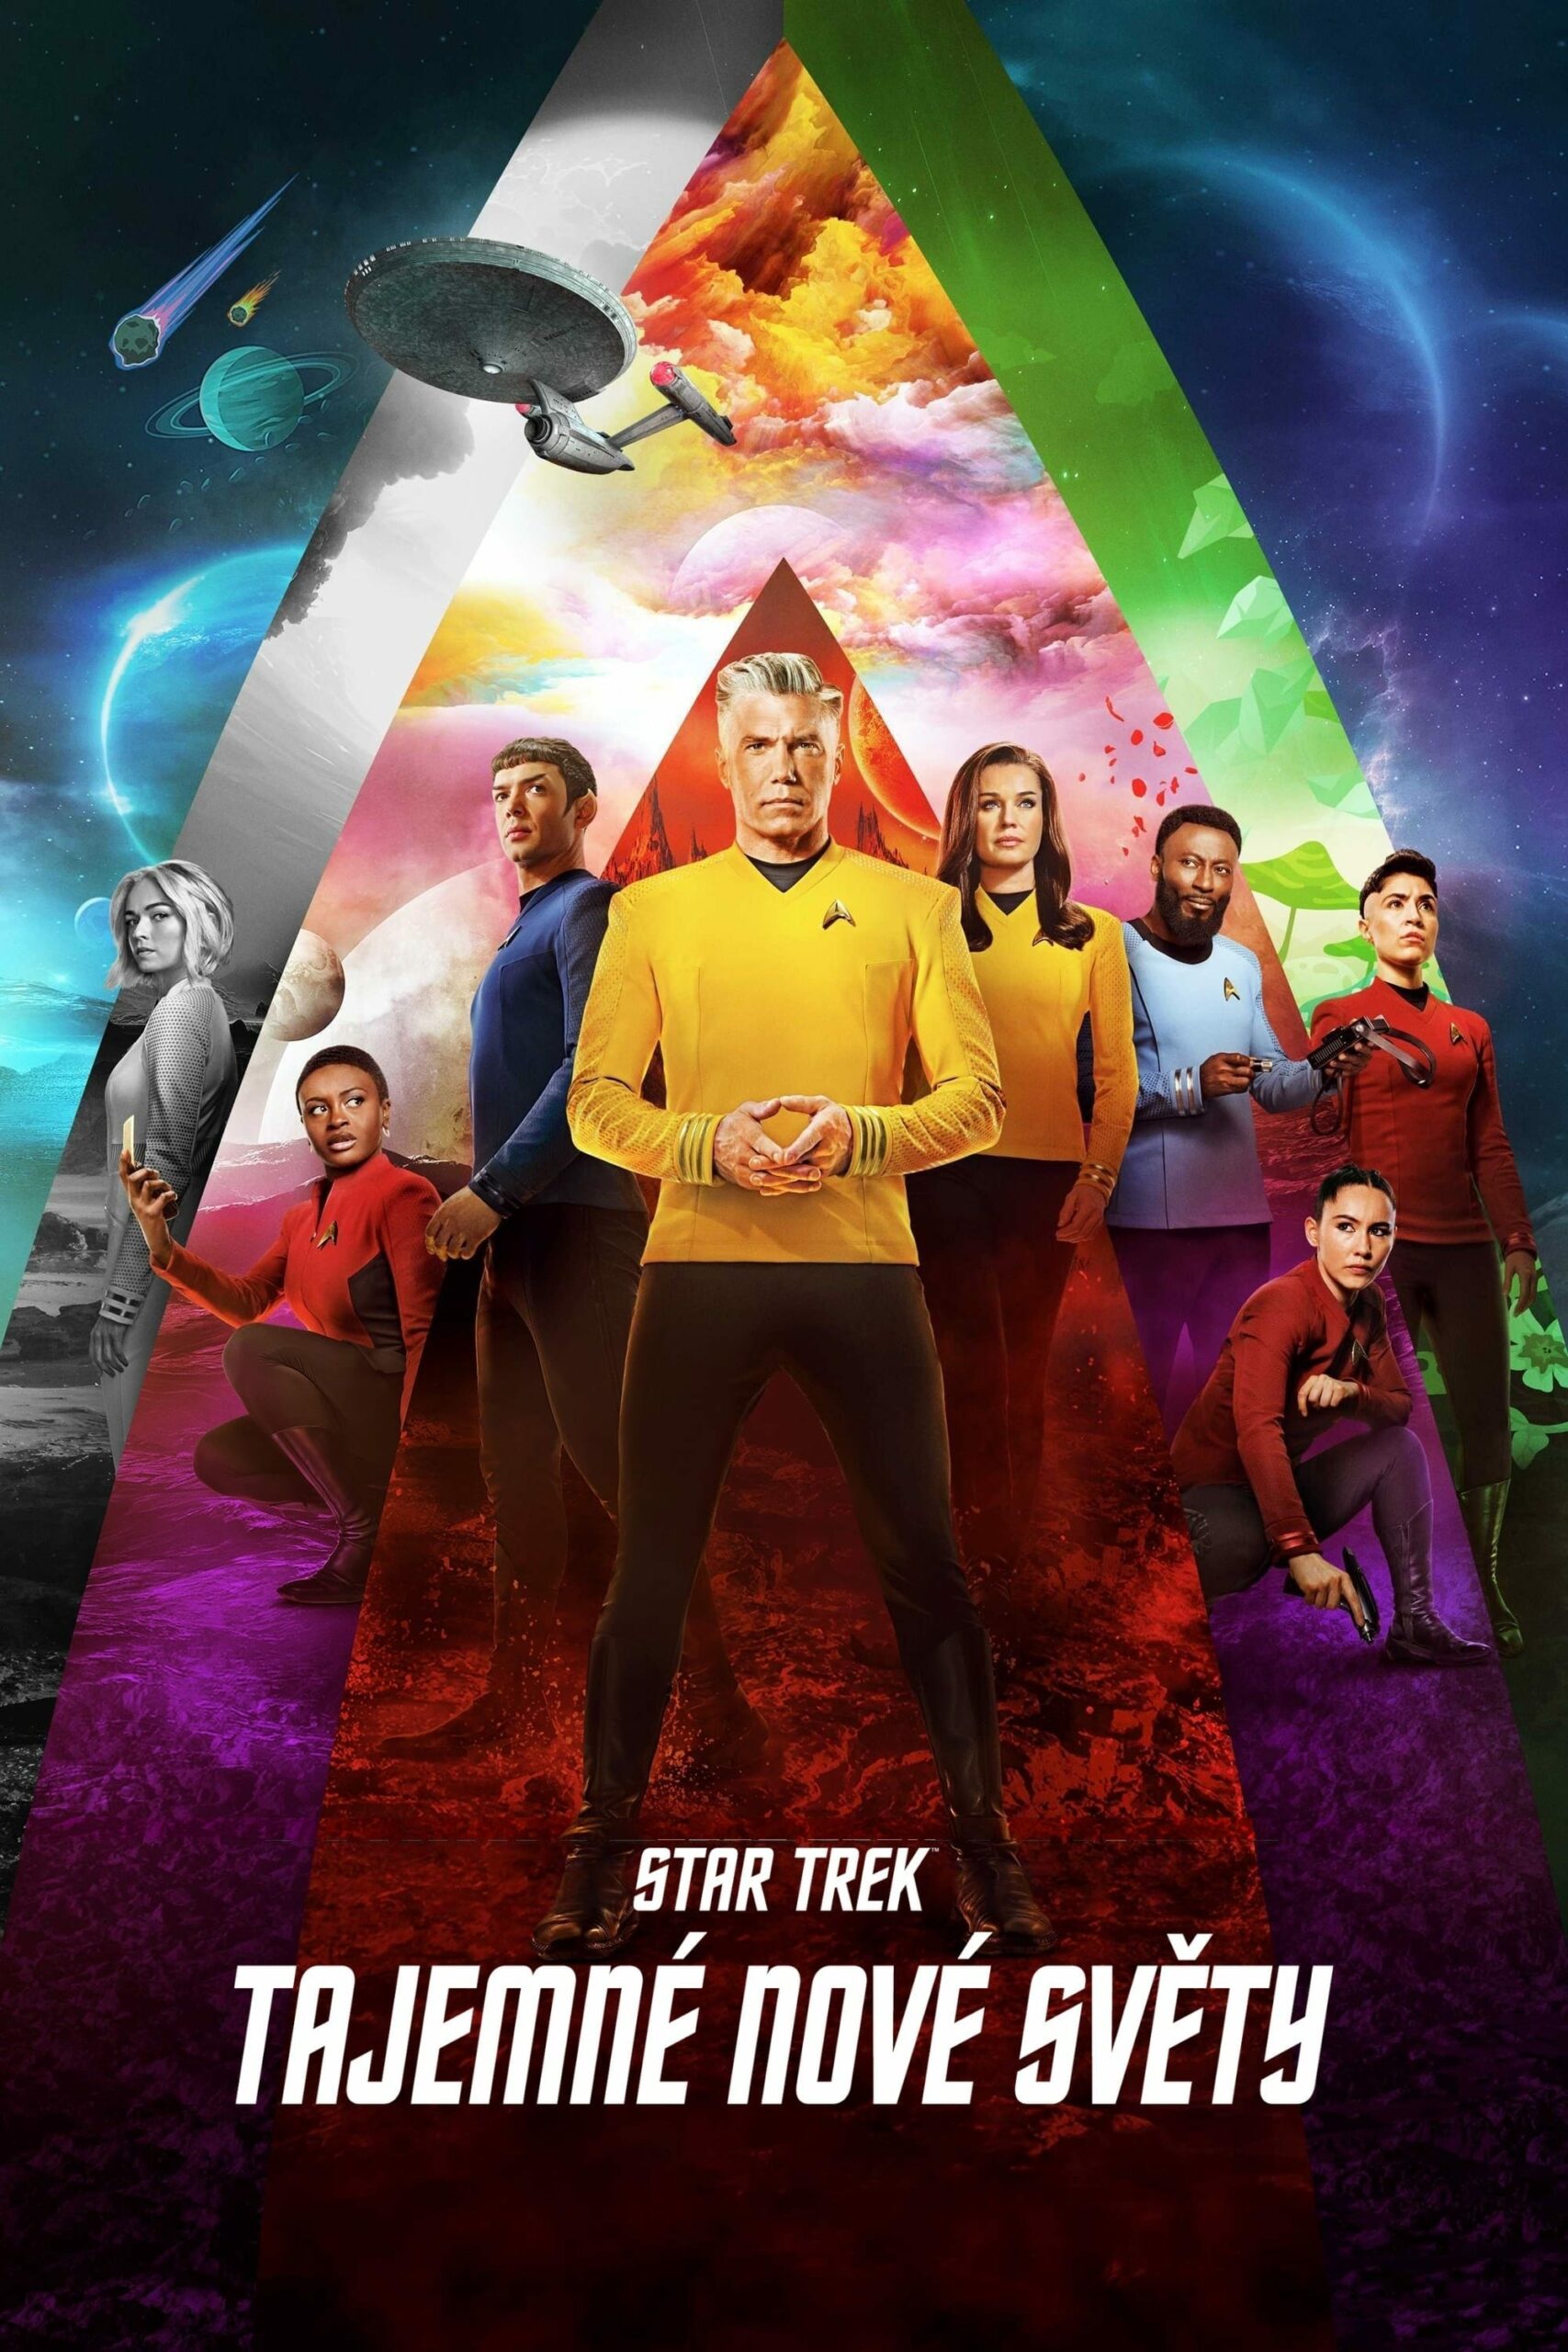 Plakát pro film “Star Trek: Podivné nové světy”